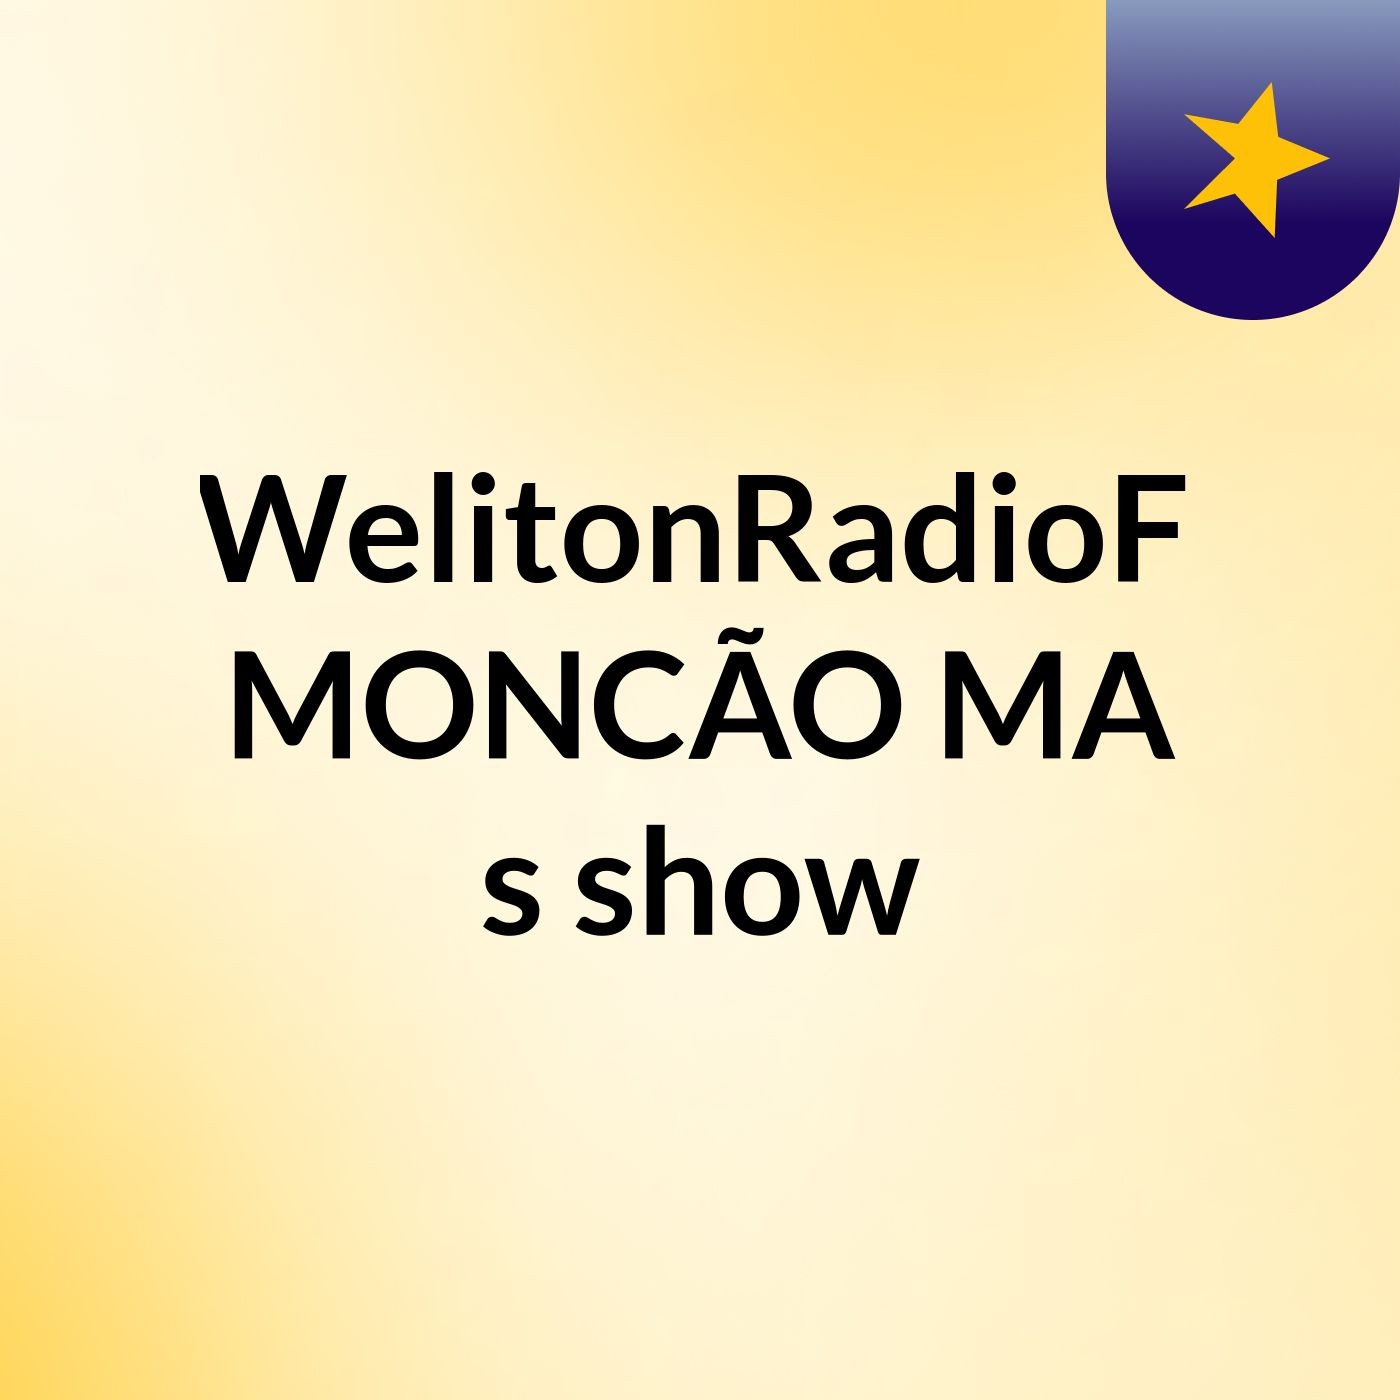 @WelitonRadioFM#MONCÃO MA's show